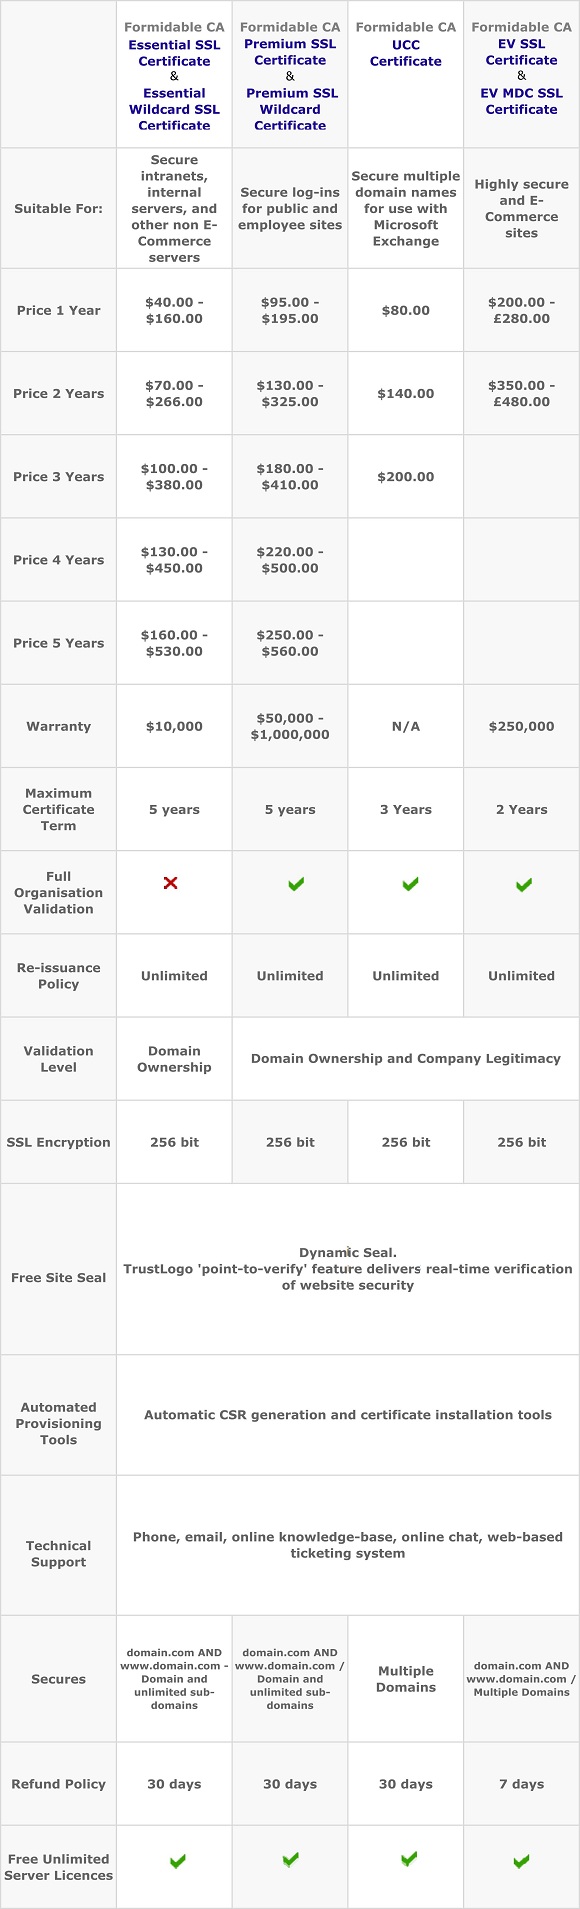 Compare our SSL Certificates